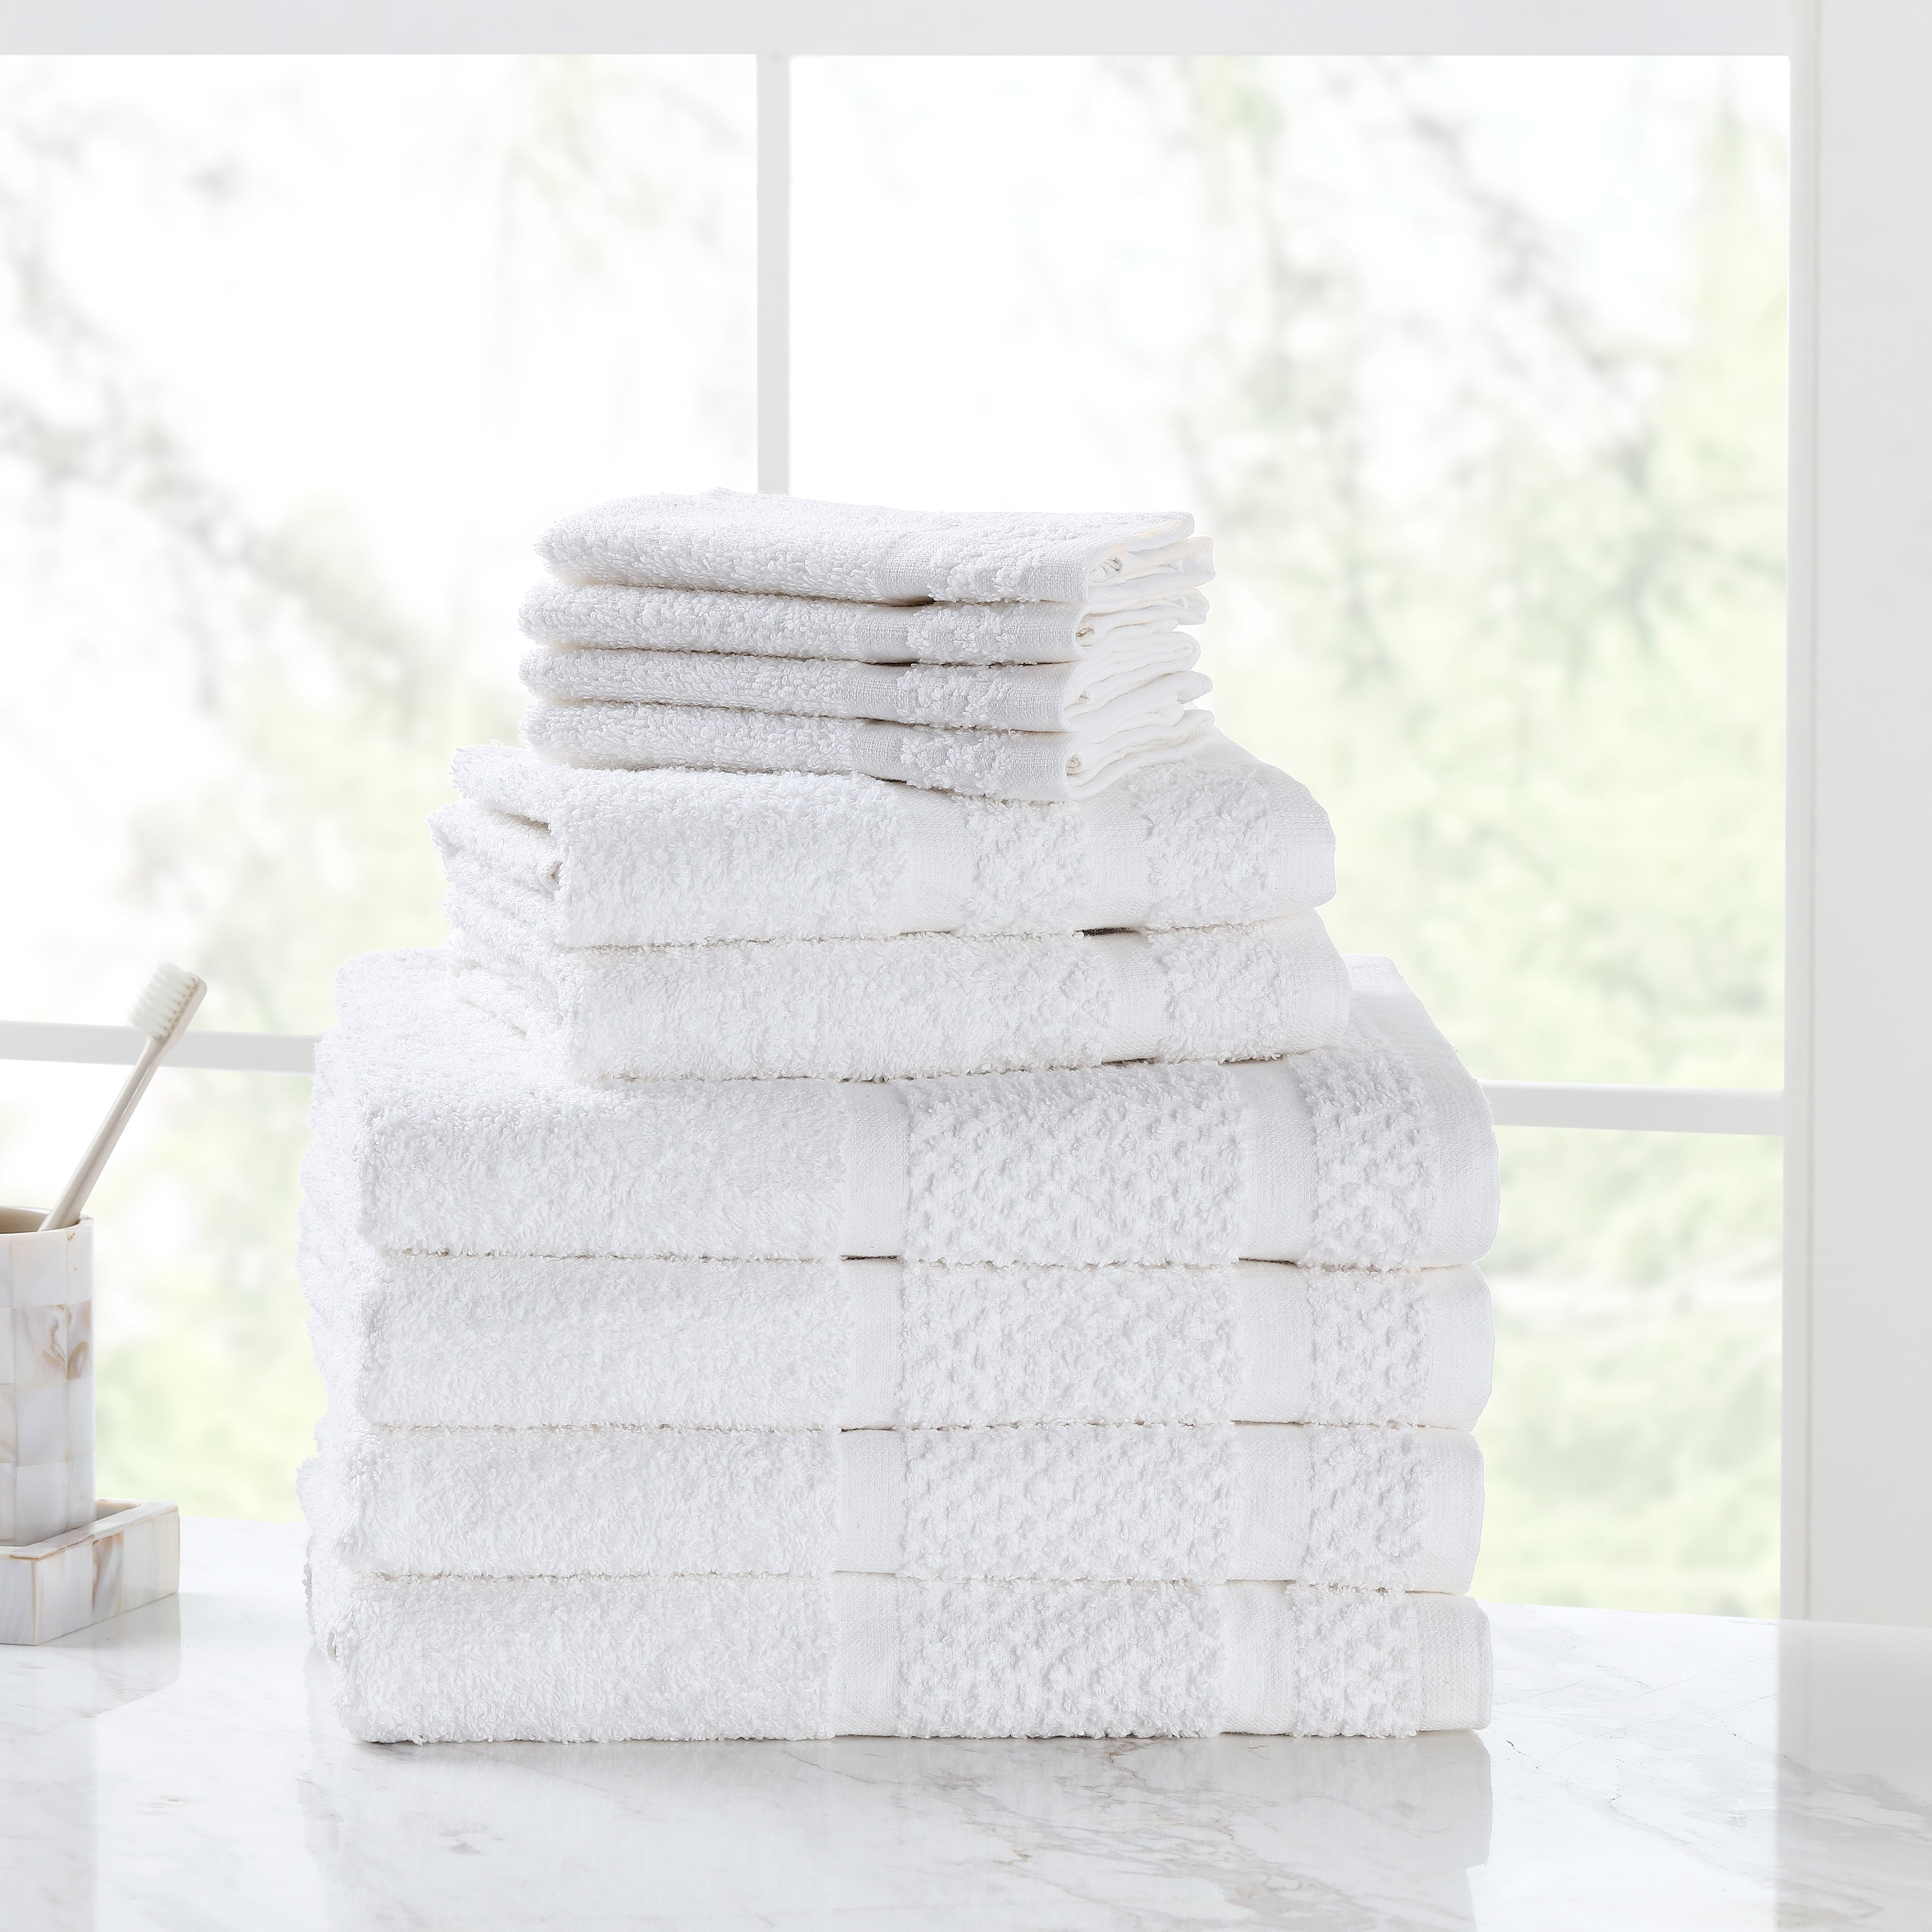 Mainstays 10 Piece Bath Towel Set with Upgraded Softness & Durability, White - Walmart.com